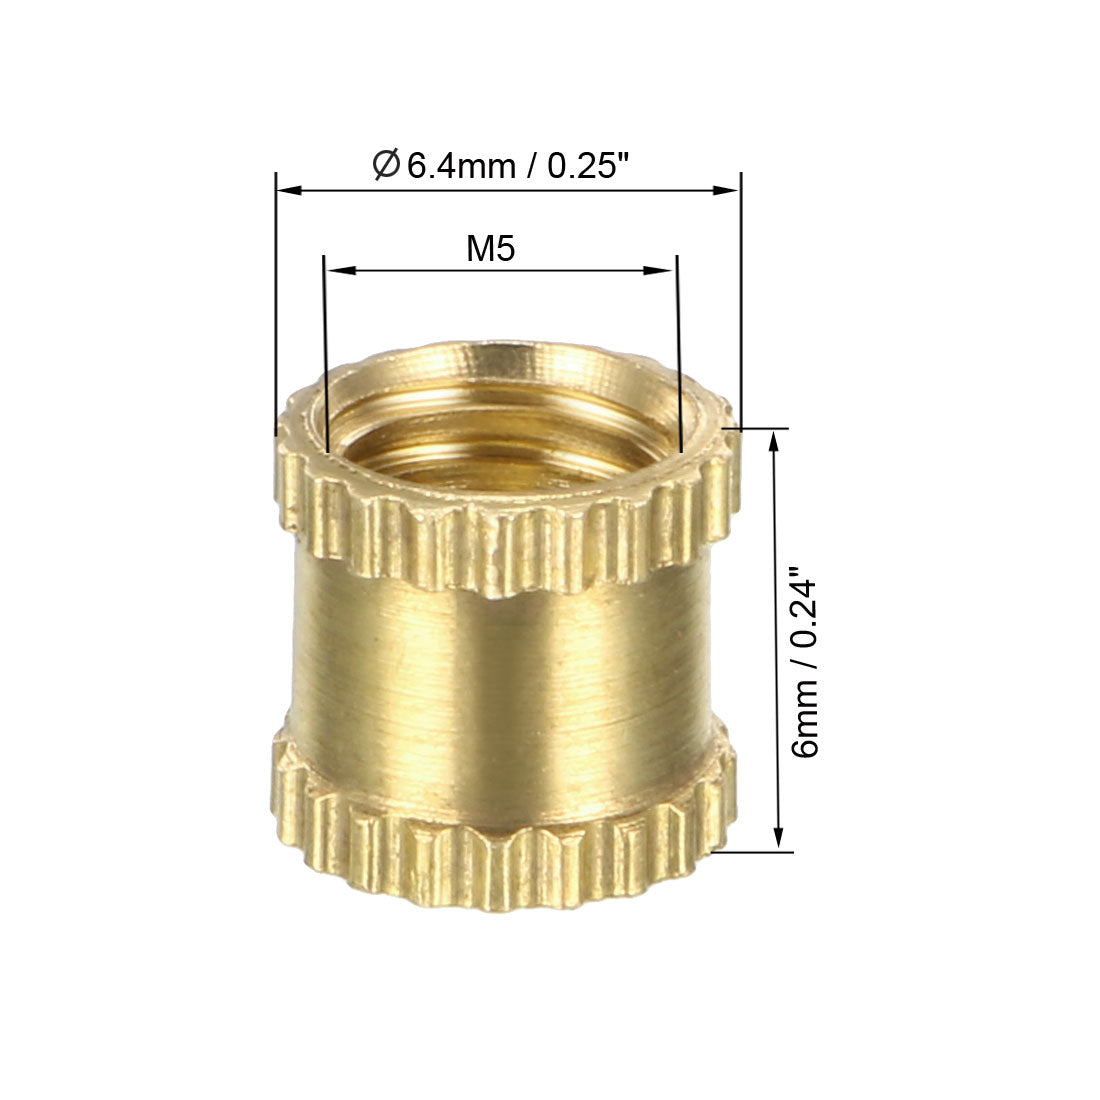 uxcell Uxcell M5 x 6mm(L) x 6.4mm(OD) Female Thread Brass Knurled Threaded Insert Embedment Nuts, 100 Pcs